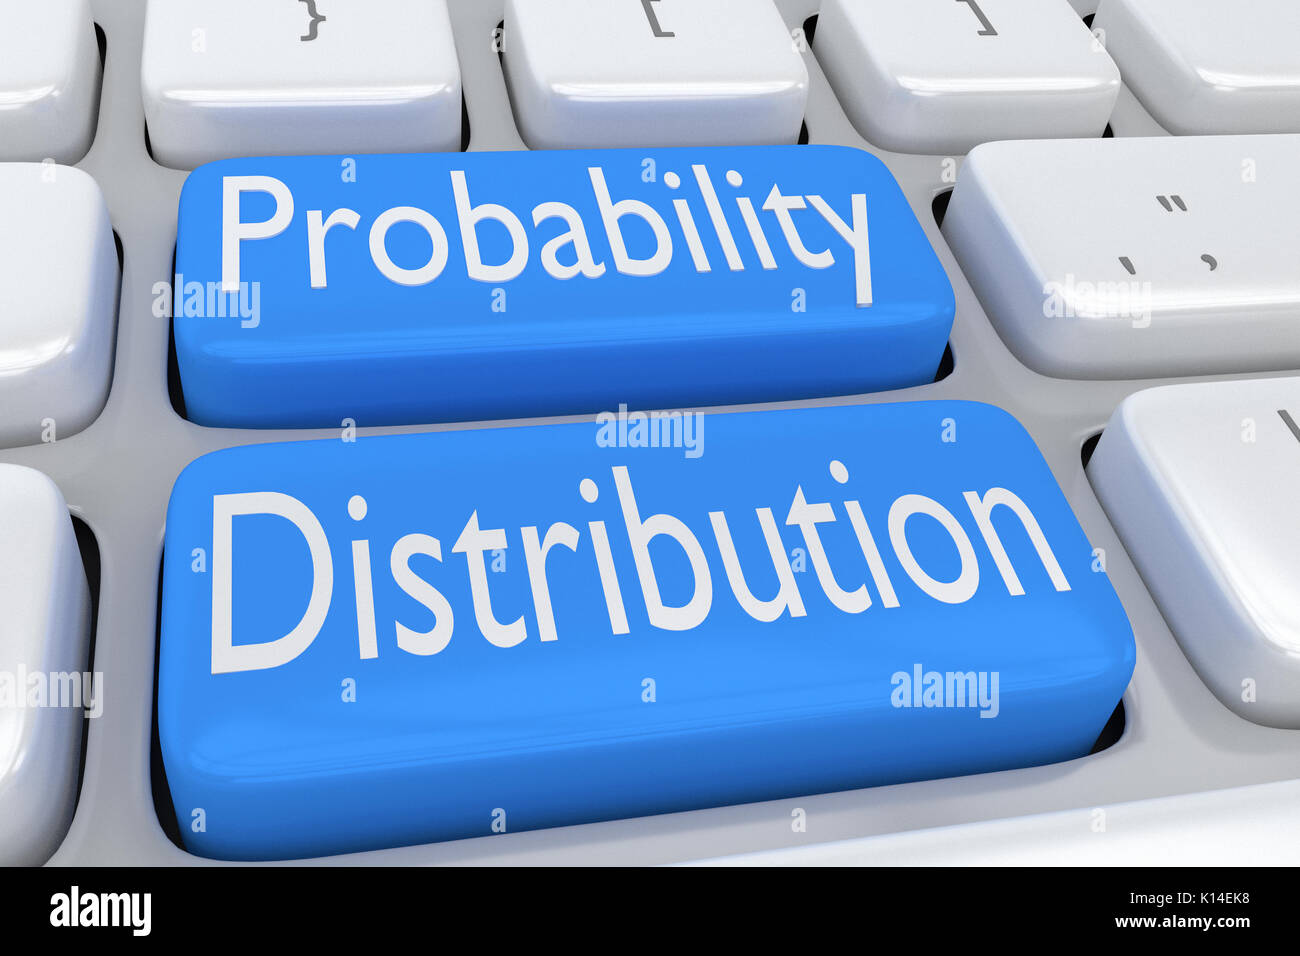 3D illustrazione della tastiera del computer con lo script "Distribuzione di probabilità' su due pale adiacenti i pulsanti blu Foto Stock